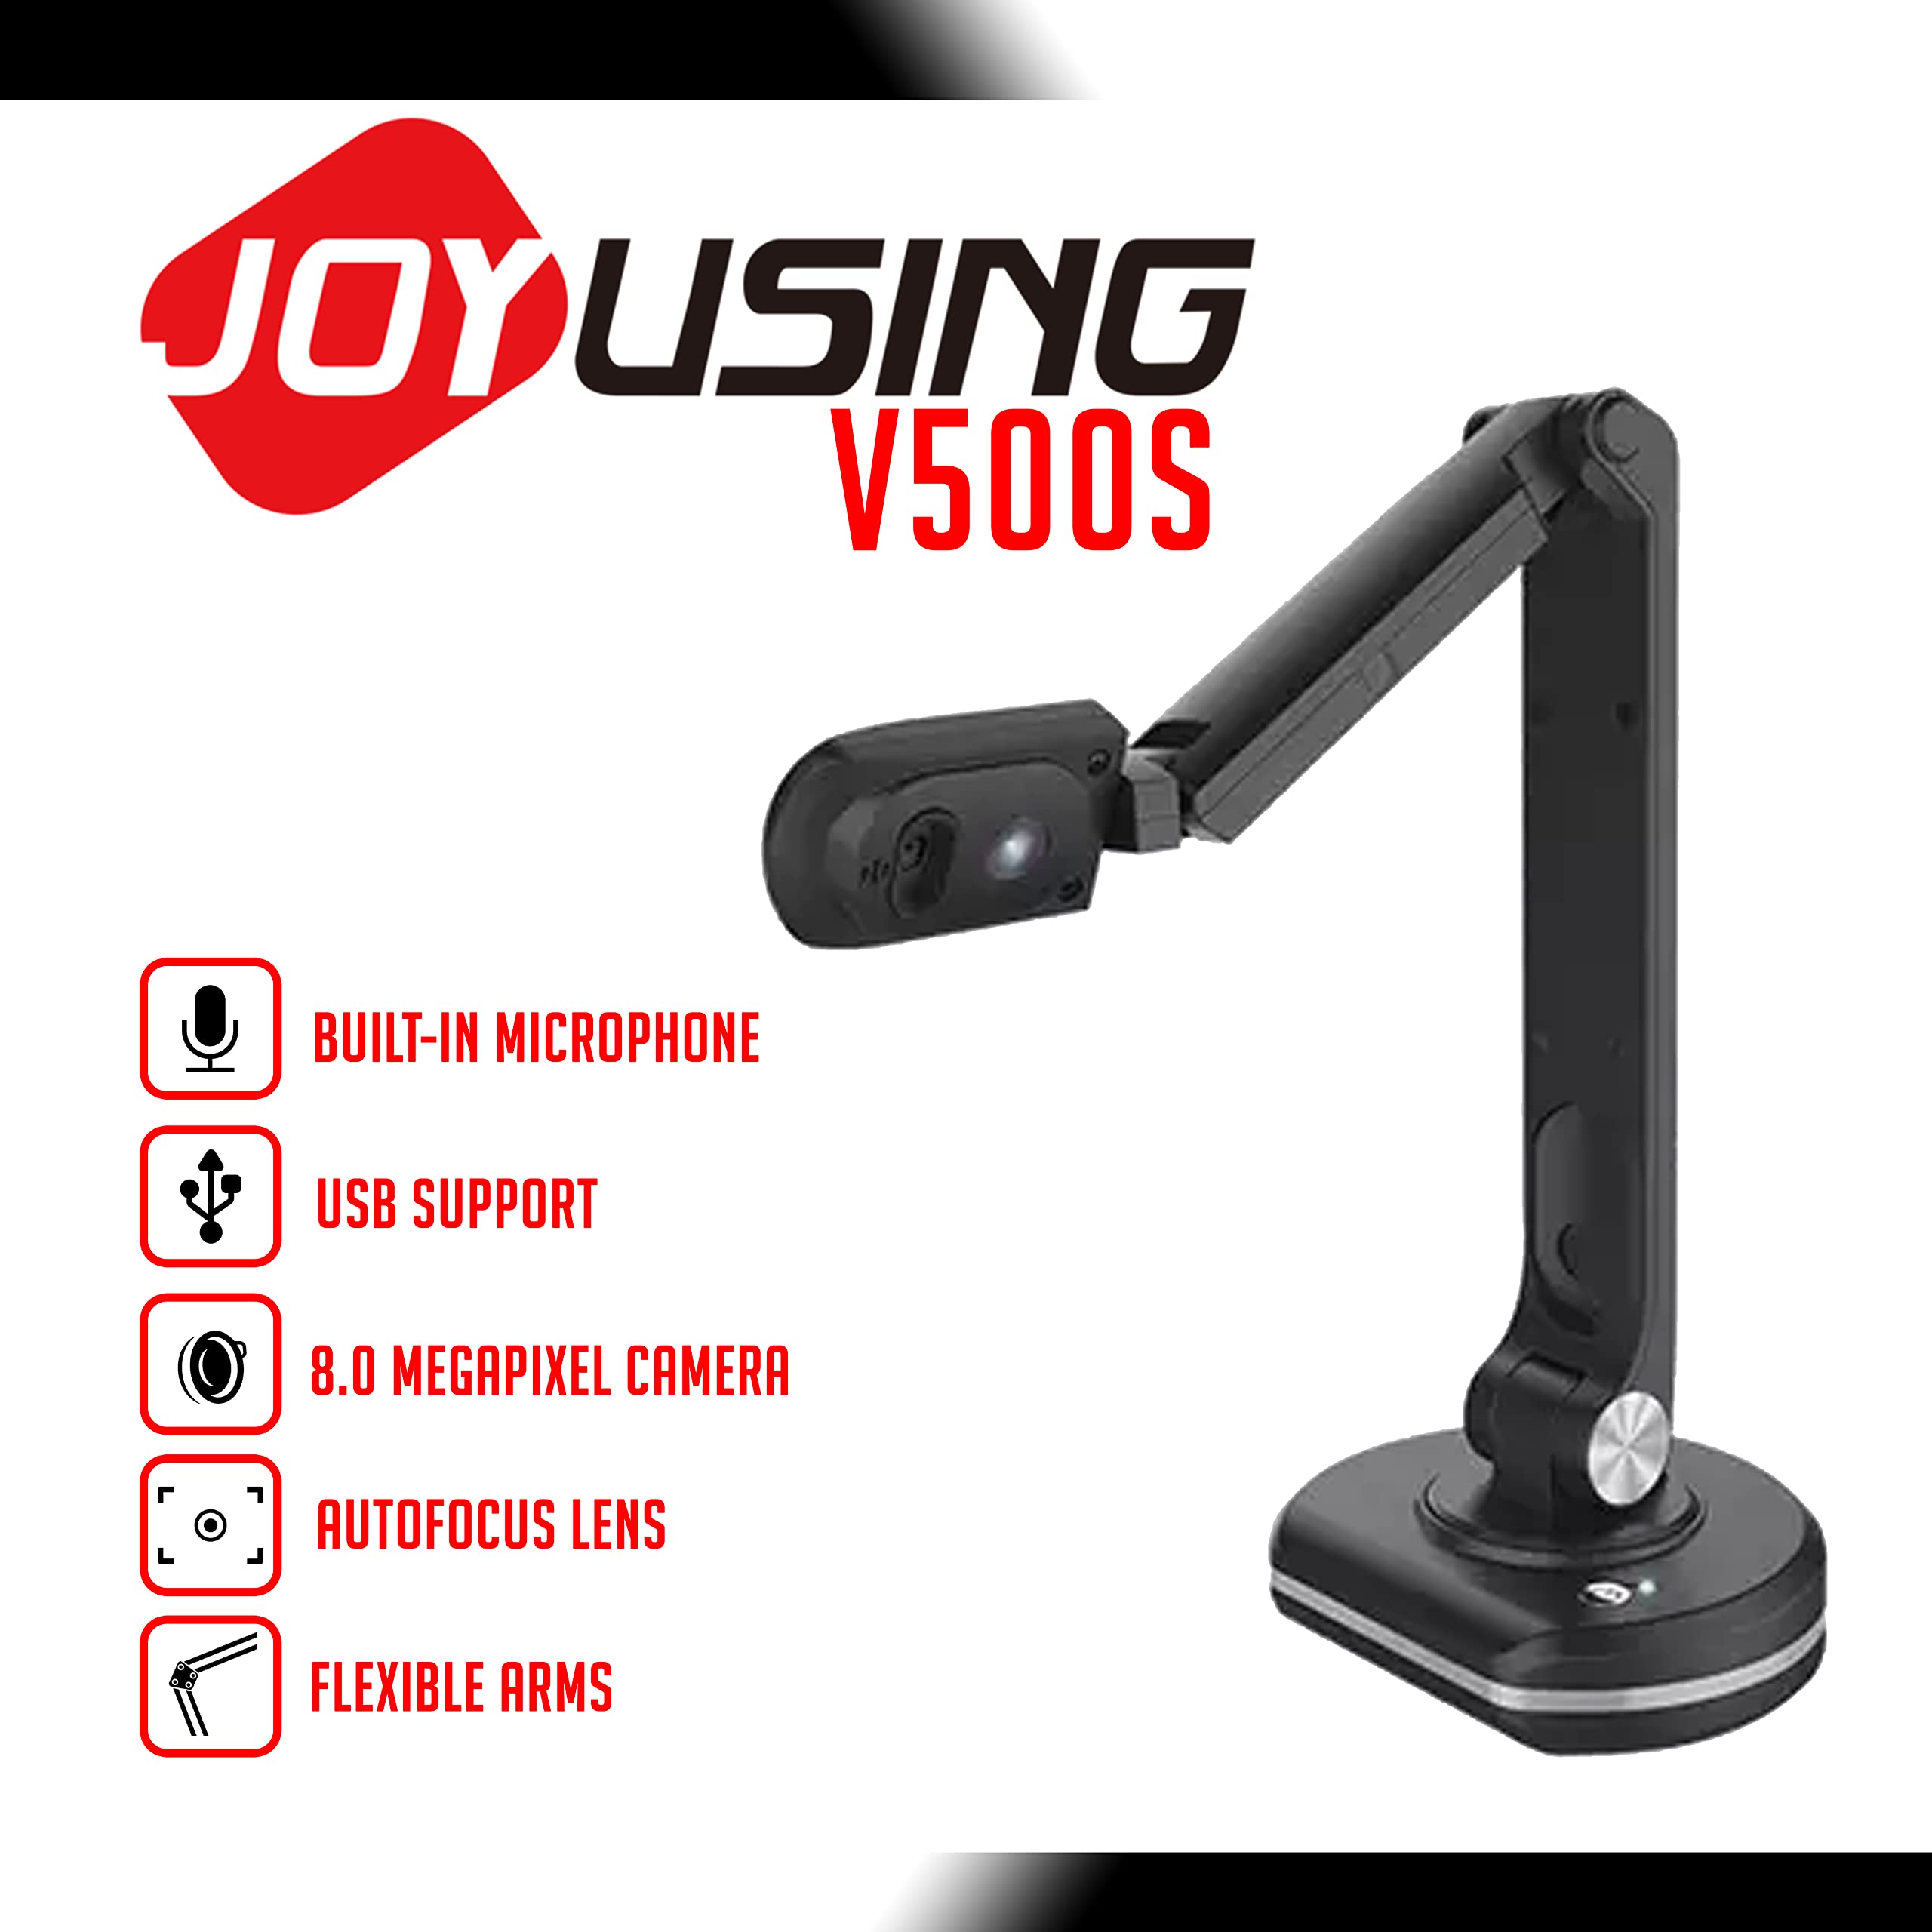 JOYUSING V500S Joy-DocCam Document Camera, 1/4